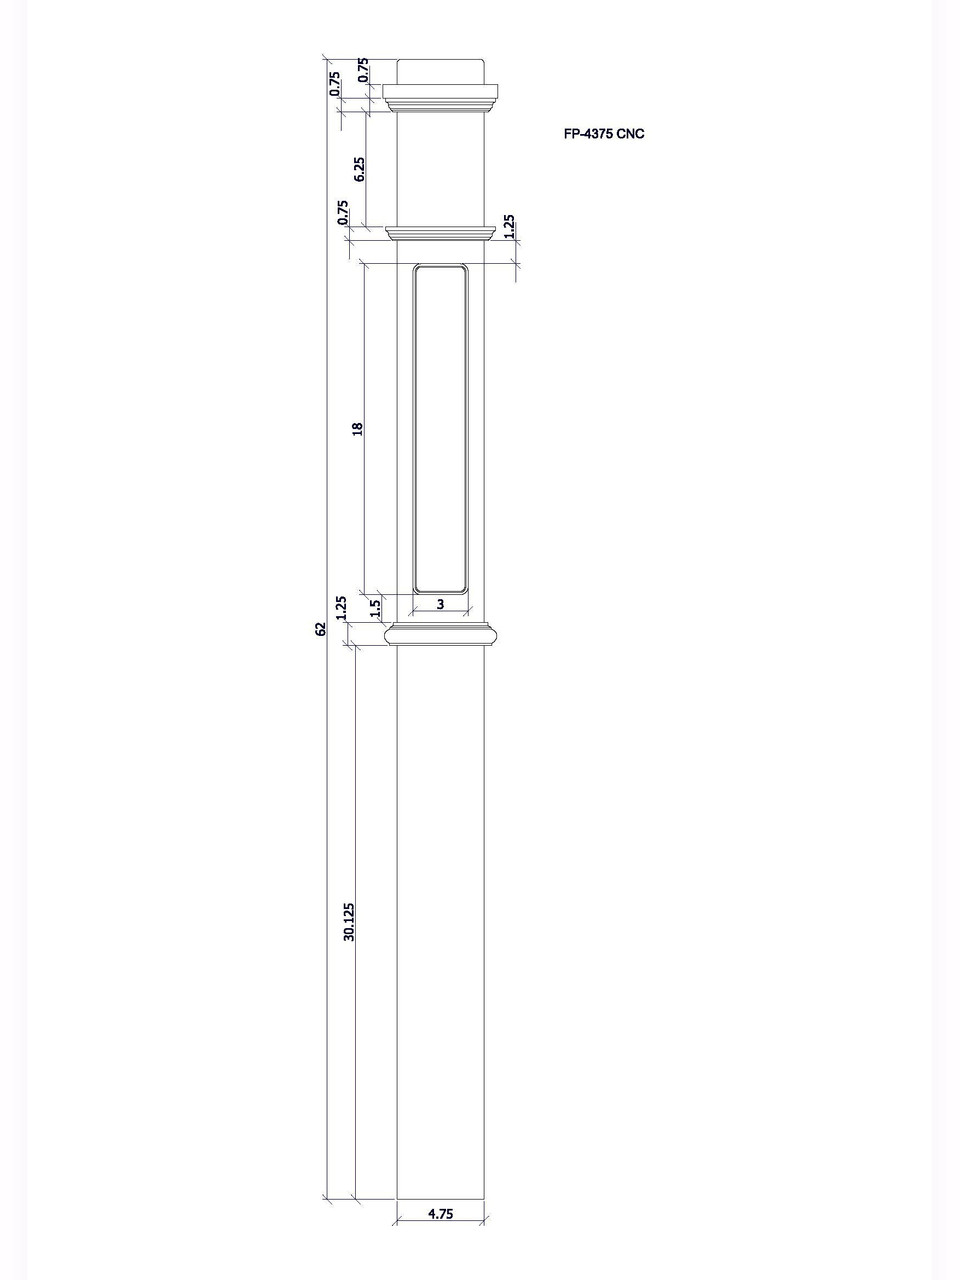 FP-4375 CNC Flat Panel Box Newel Post, CADD Image